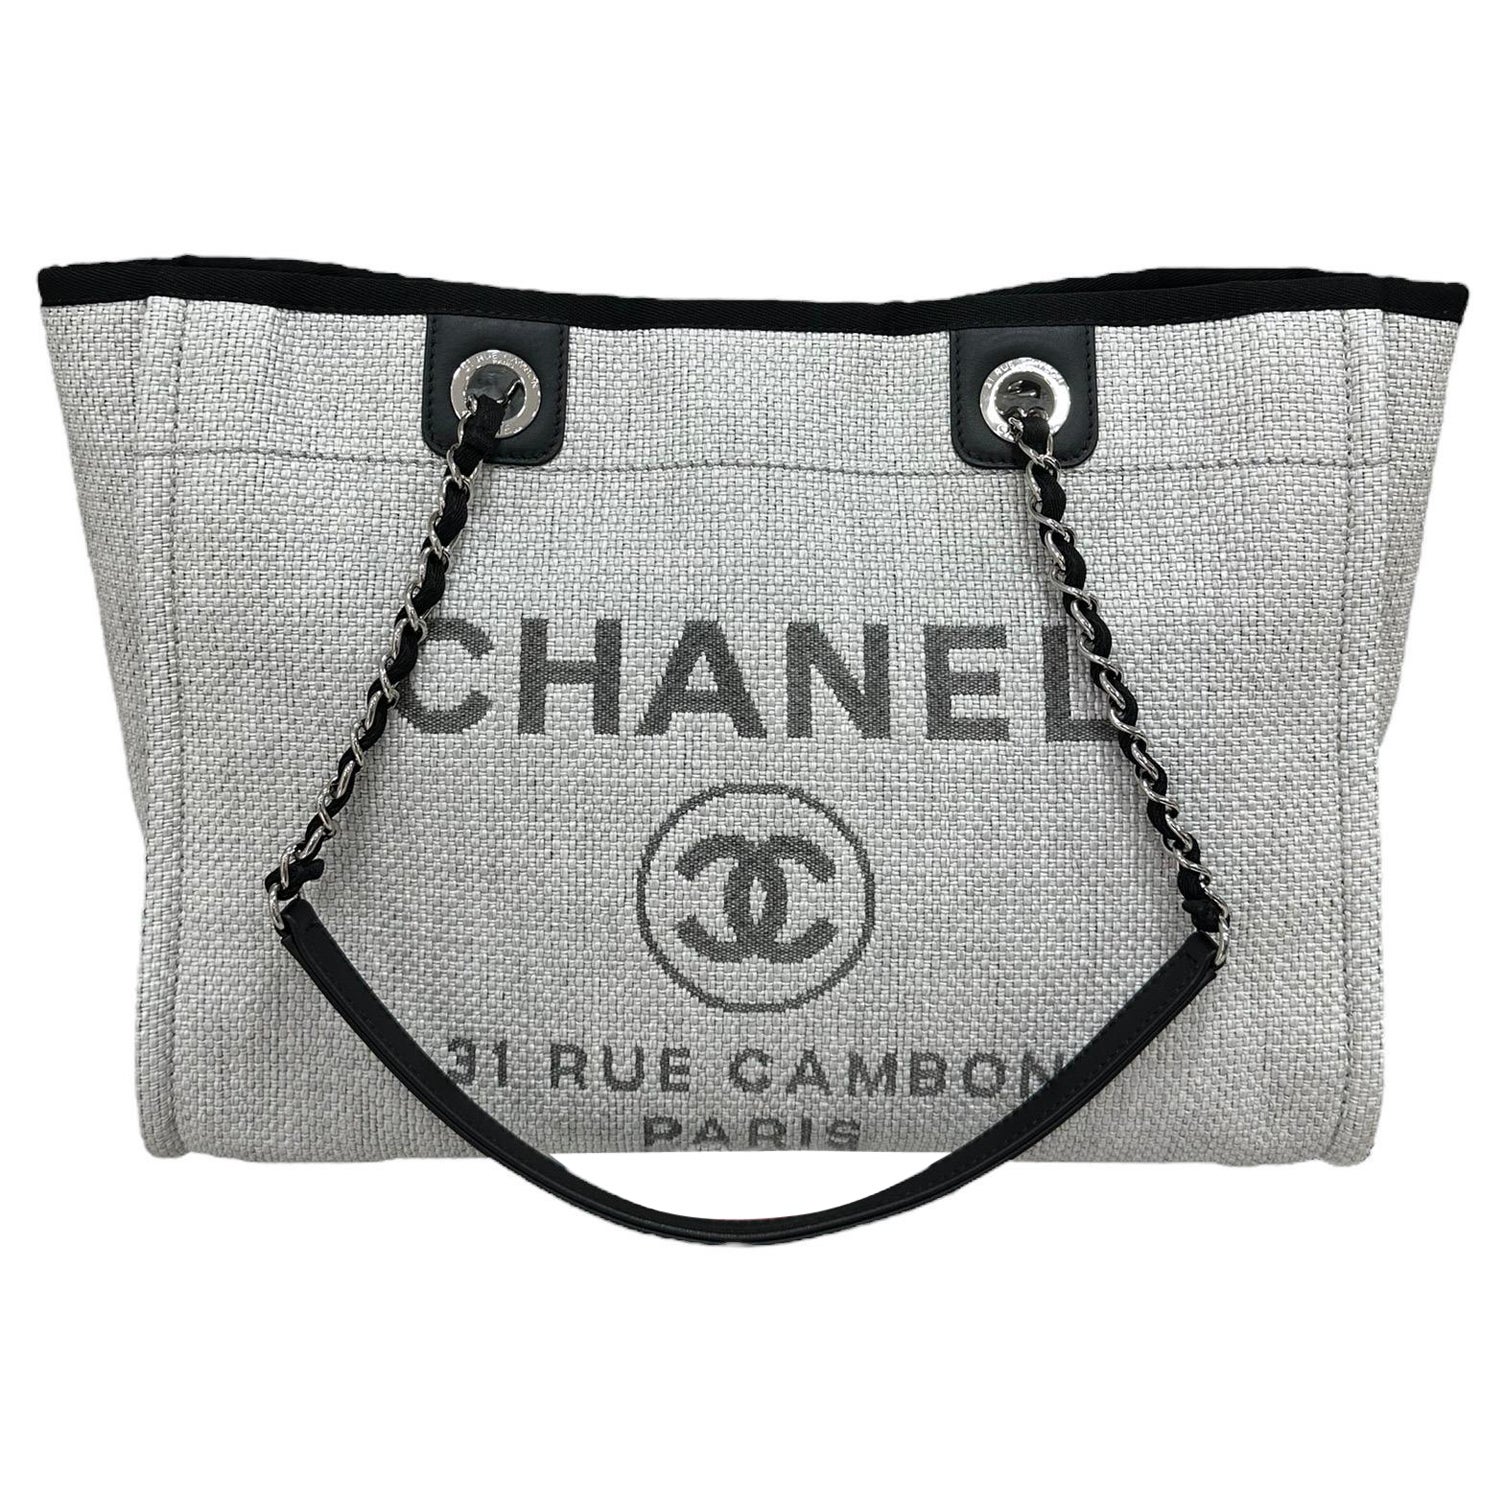 2017 Chanel Deauville Rafia Grigia e Nera Borsa a Spalla For Sale